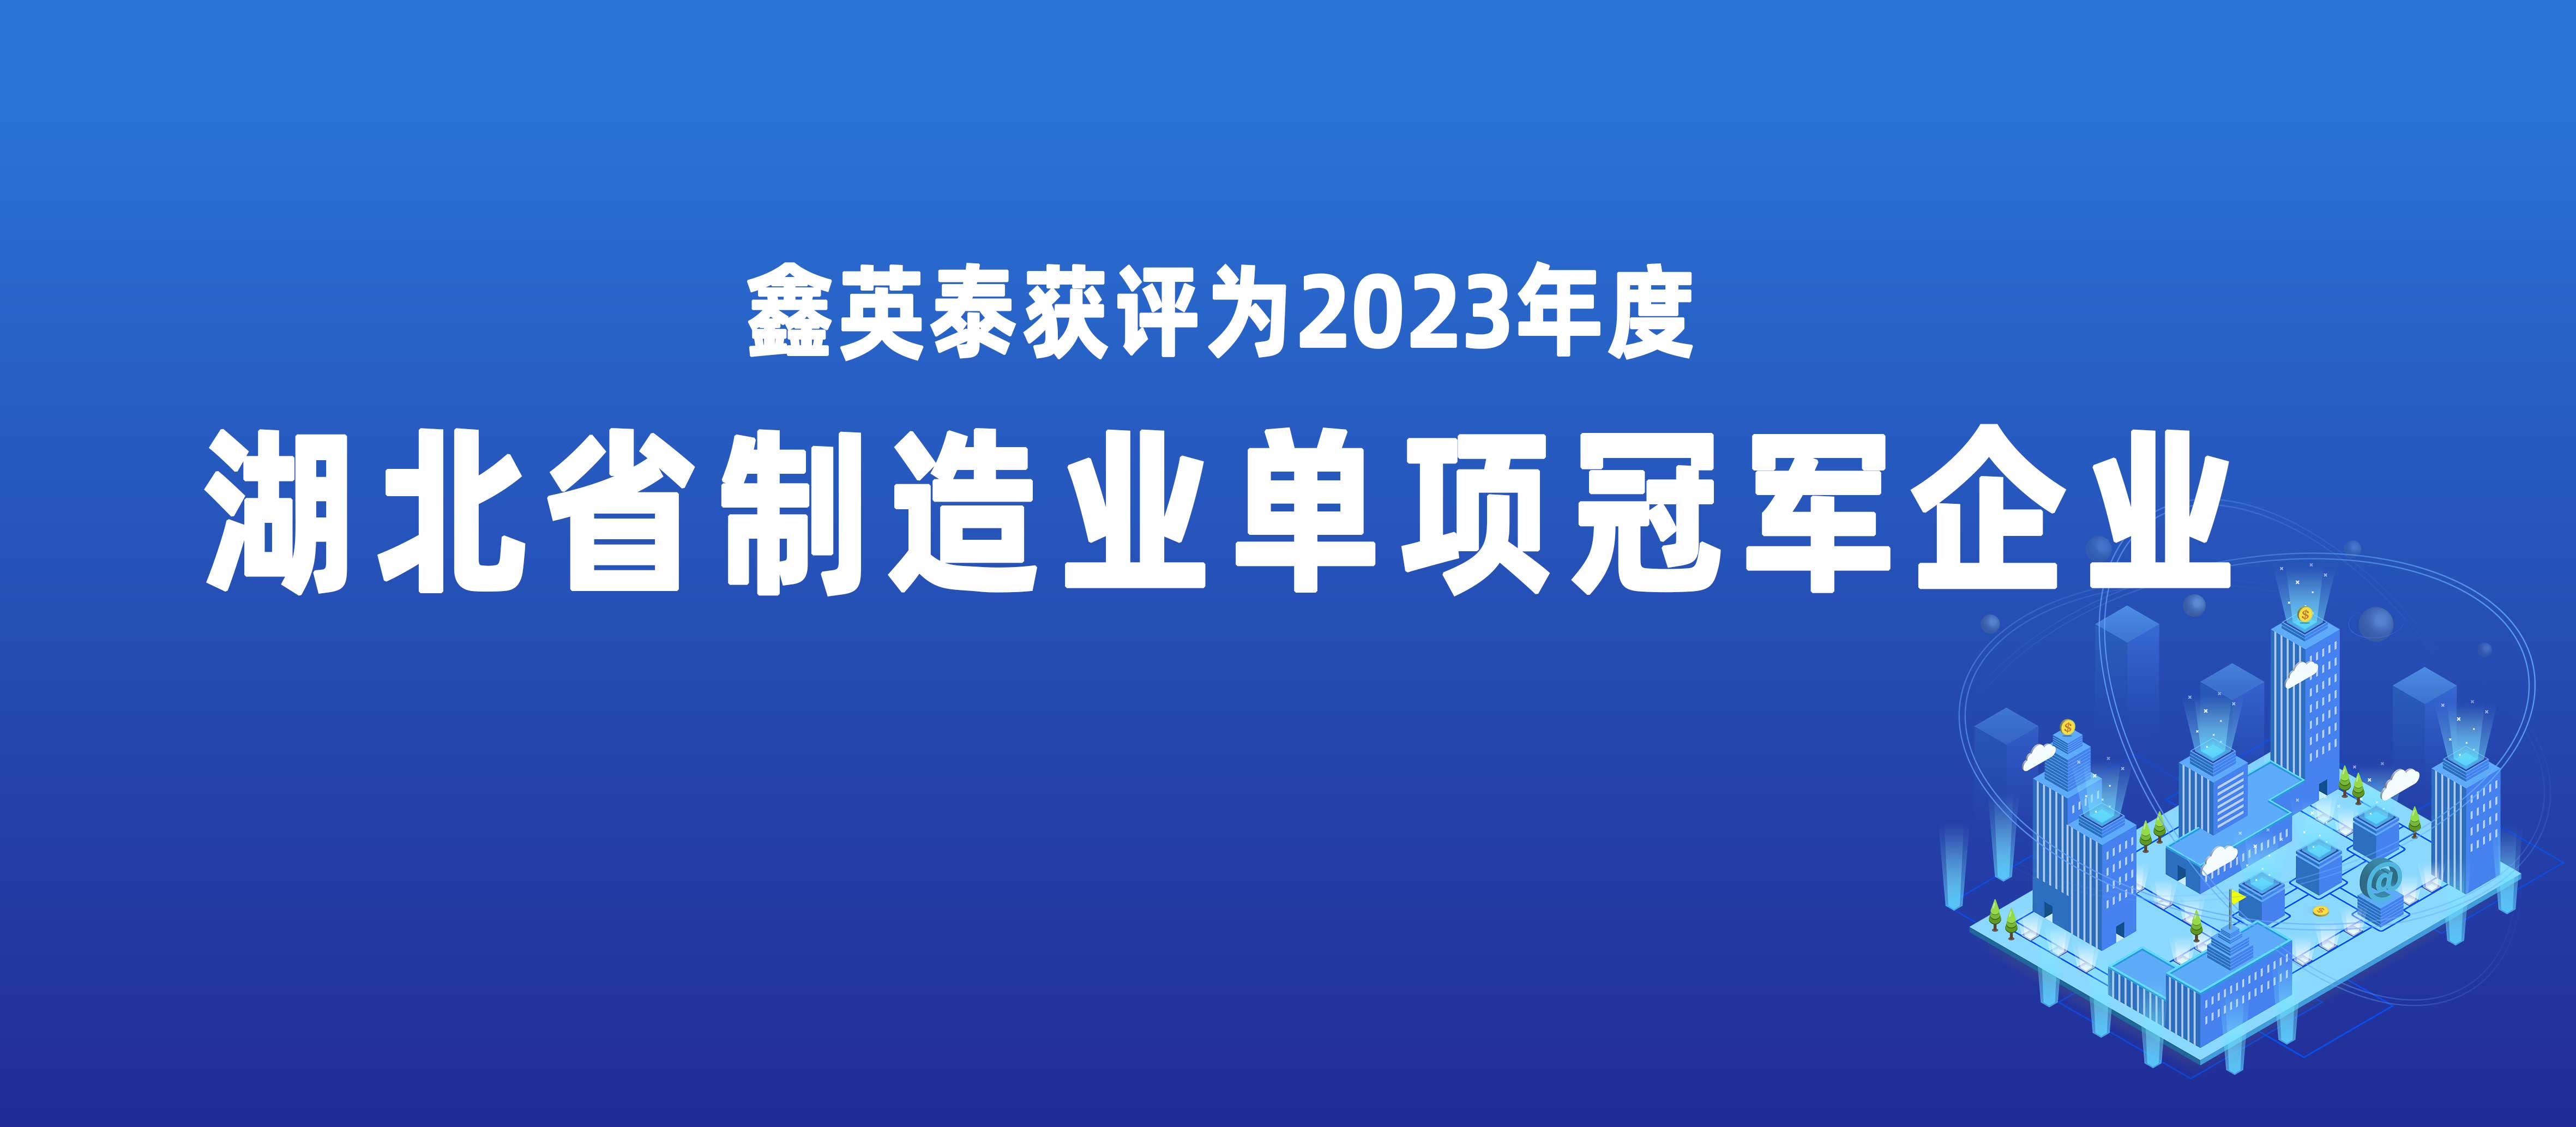 鑫英泰获评2023年度湖北省制造业单项冠军企业